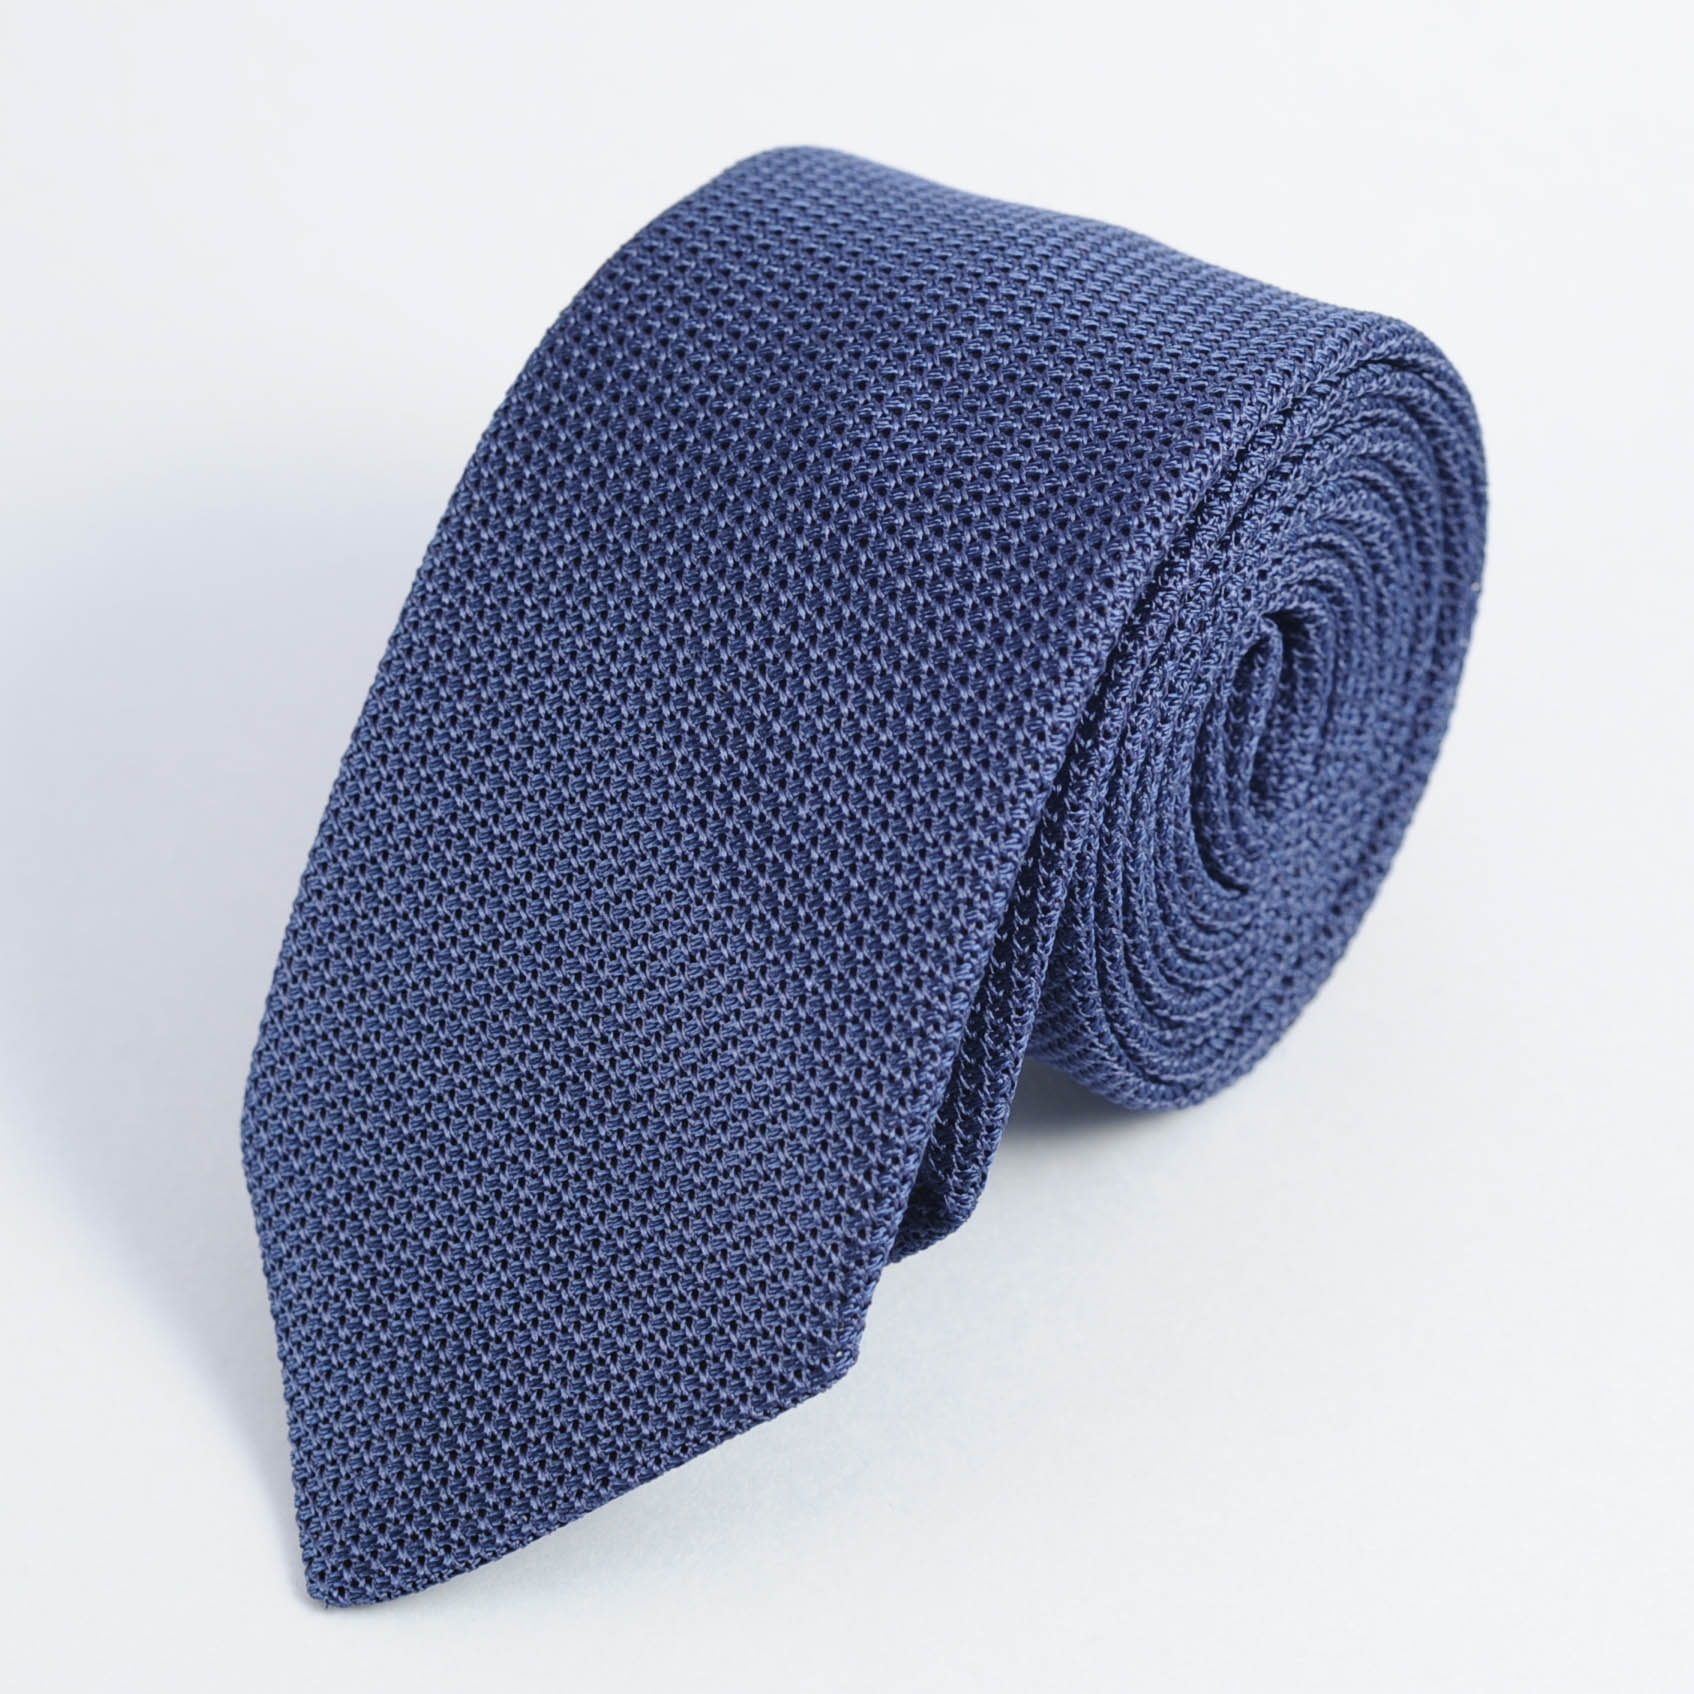 Cravate homme soie bleu etamine made in france | Packshot